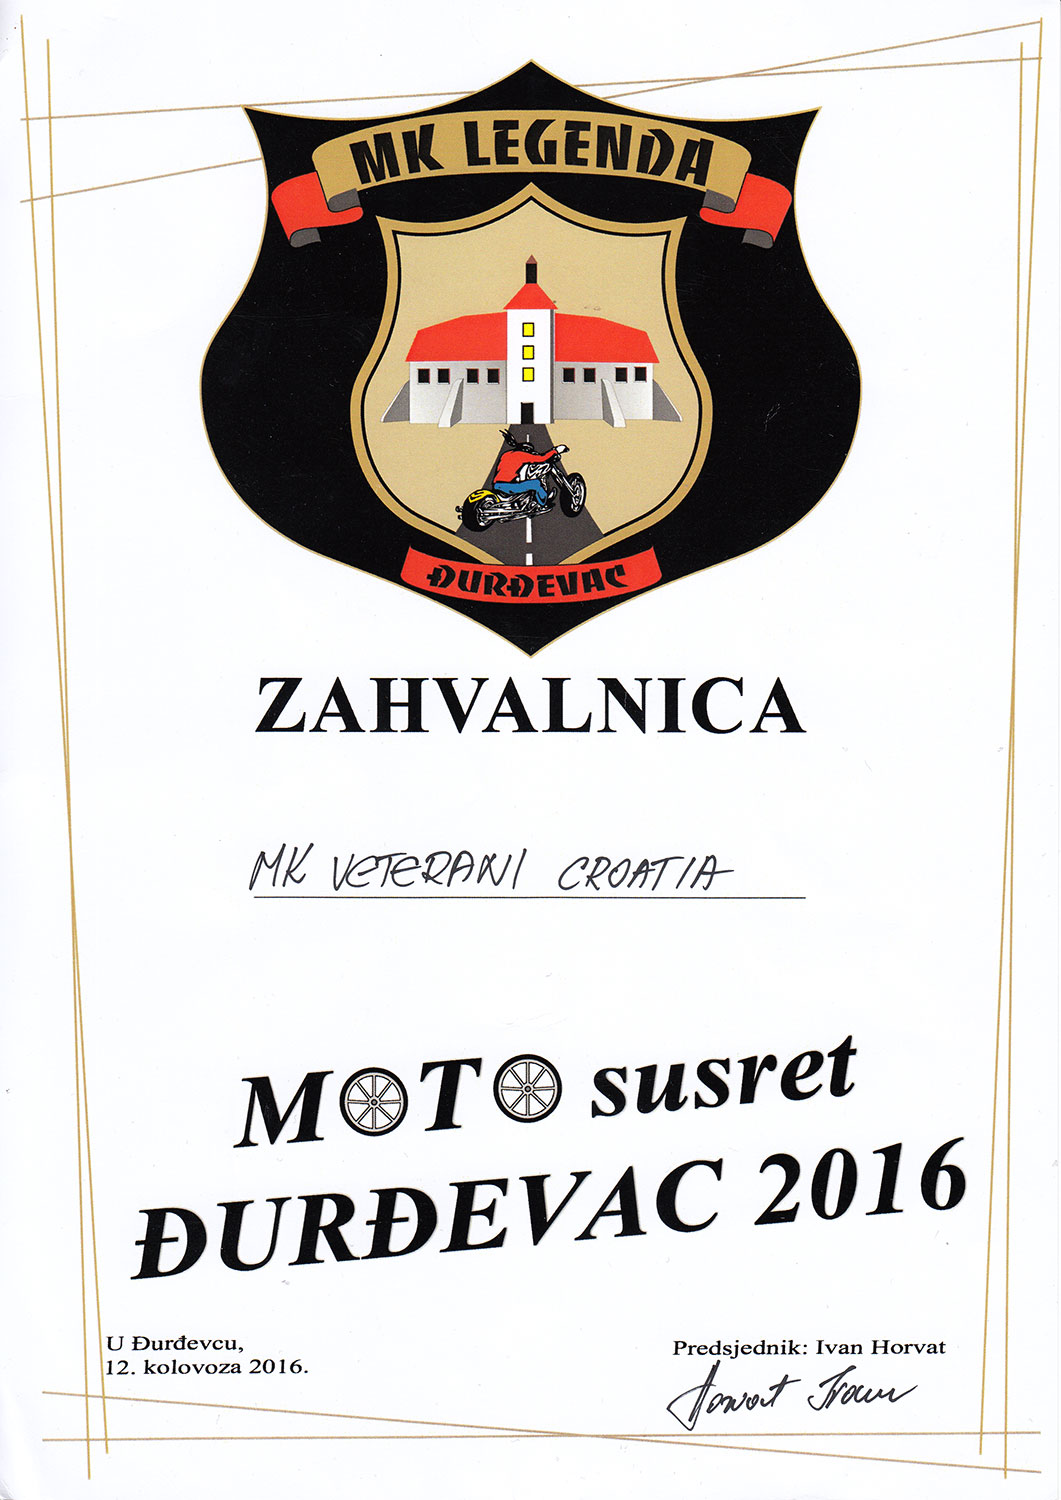 2016 08 12 mk legende durdevac